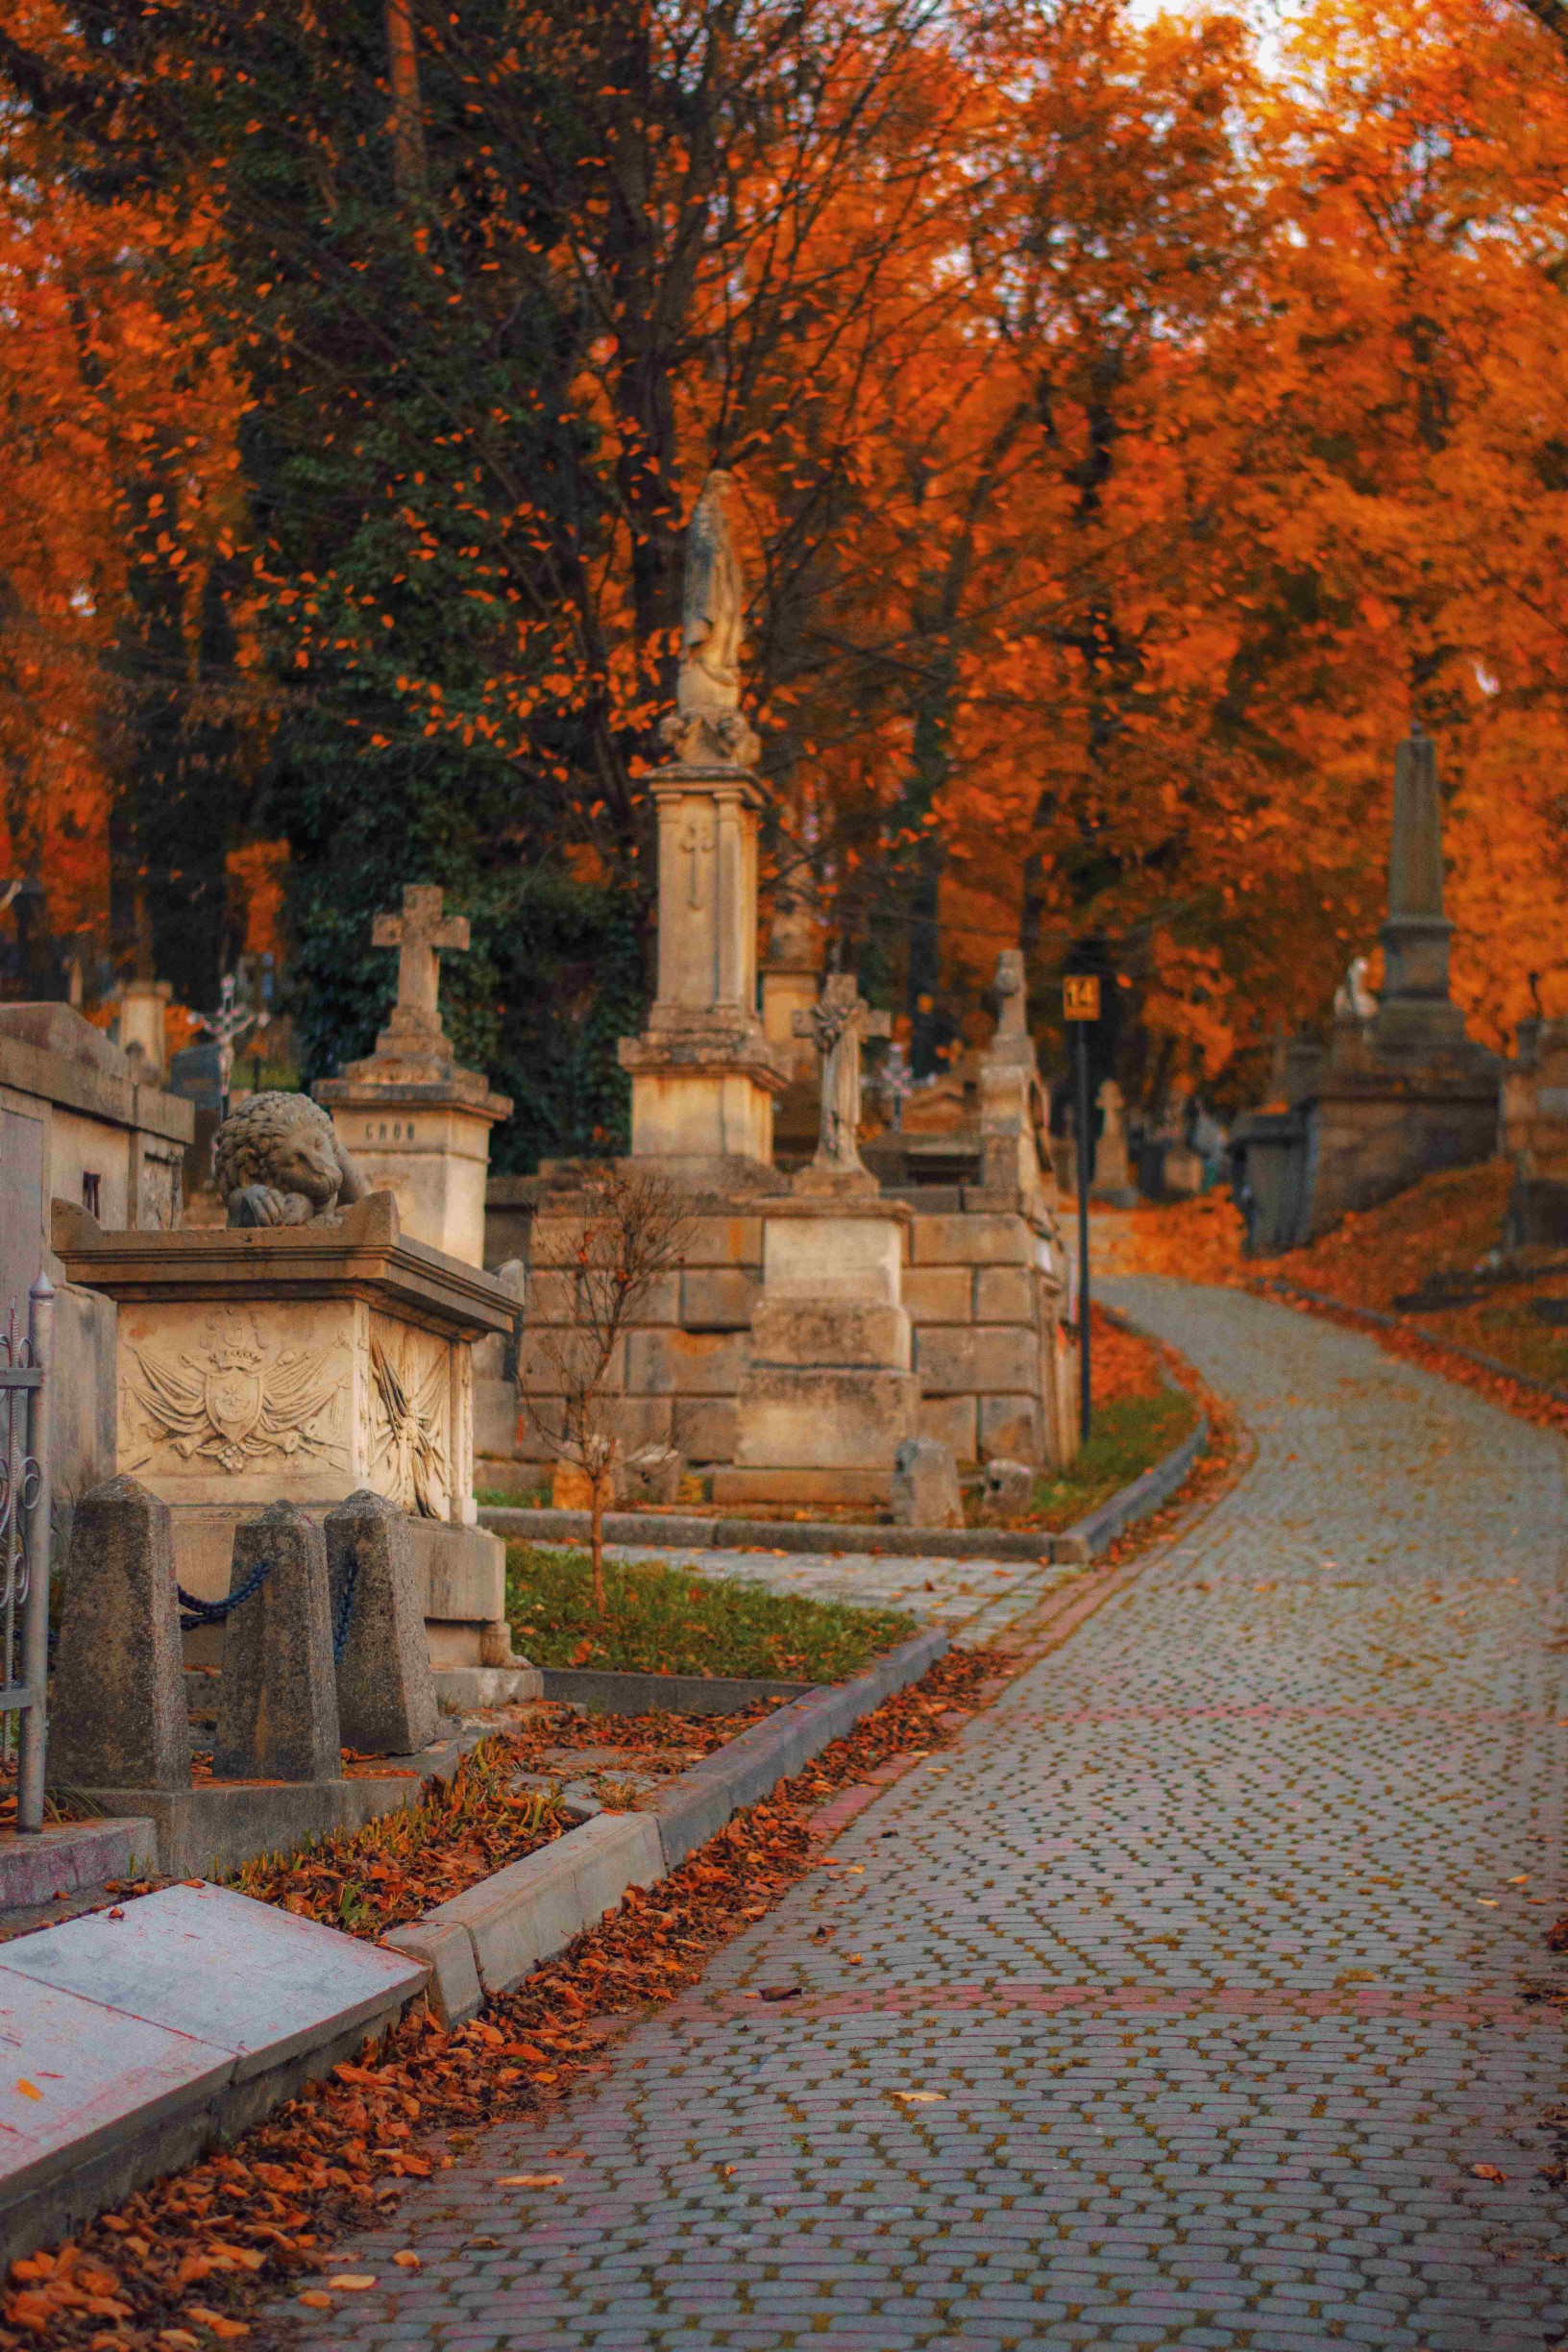 Личаківське кладовище